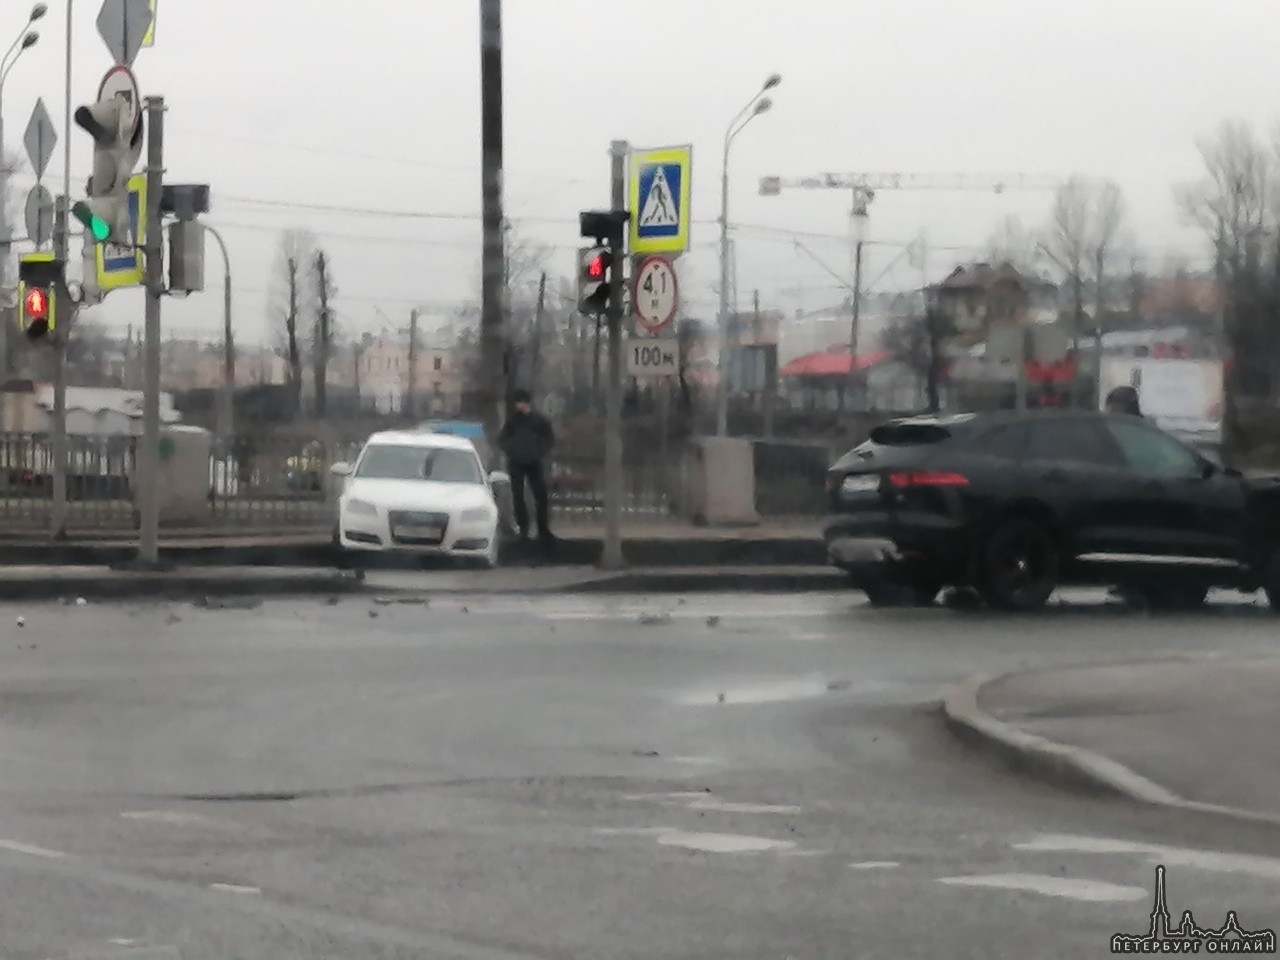 На пересечении набережной Обводного канала и Рыбинской улицы столкнулись два автомобиля: Ягуар и Ауд...